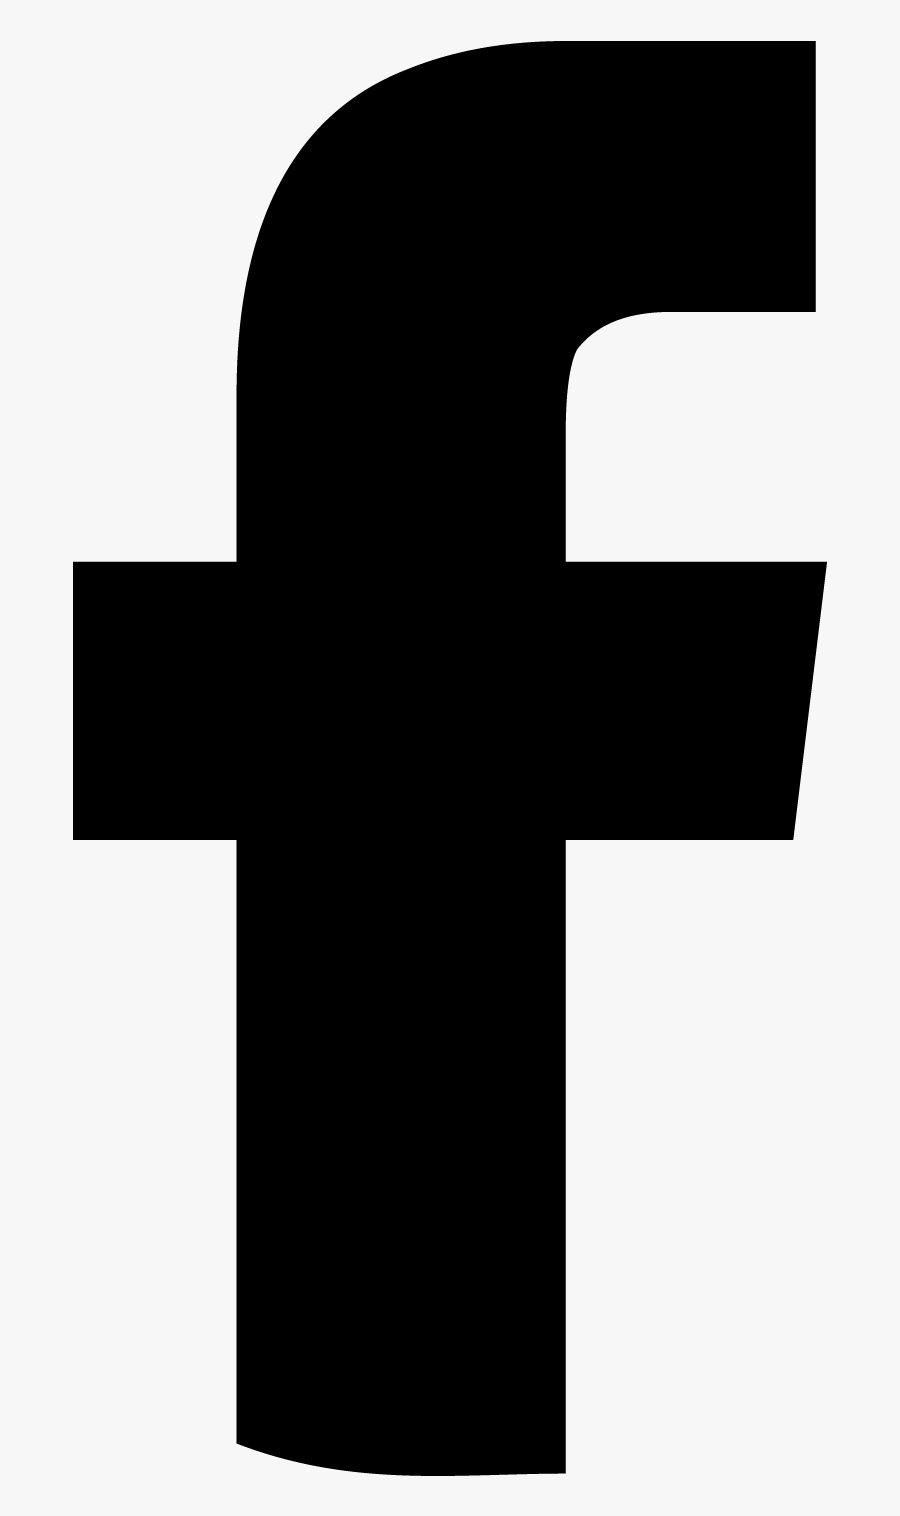 Facebook Logo Black - Logo Facebook Vector Blanco, Transparent Clipart